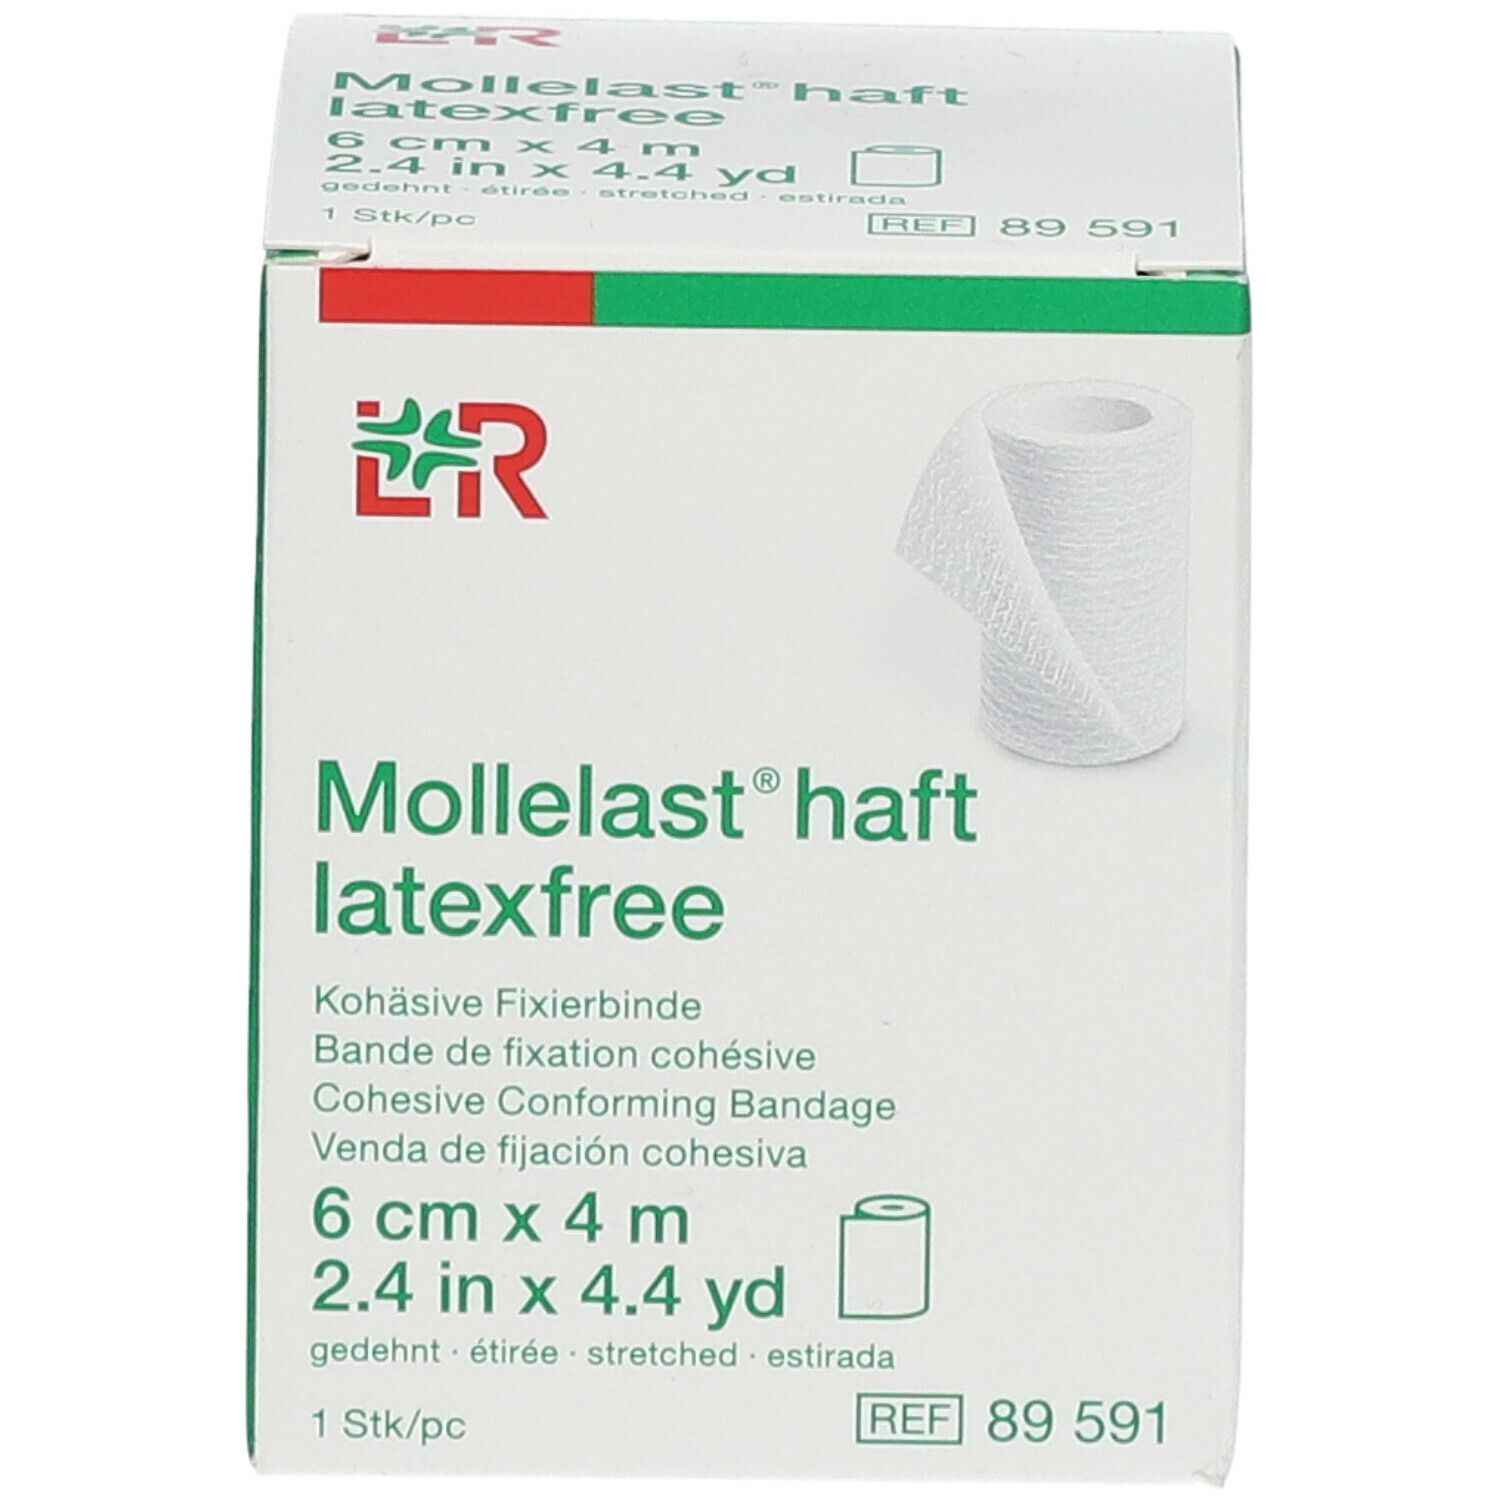 Mollelast Haft Windel Adhesief Latex Free 6cmx4m 89591